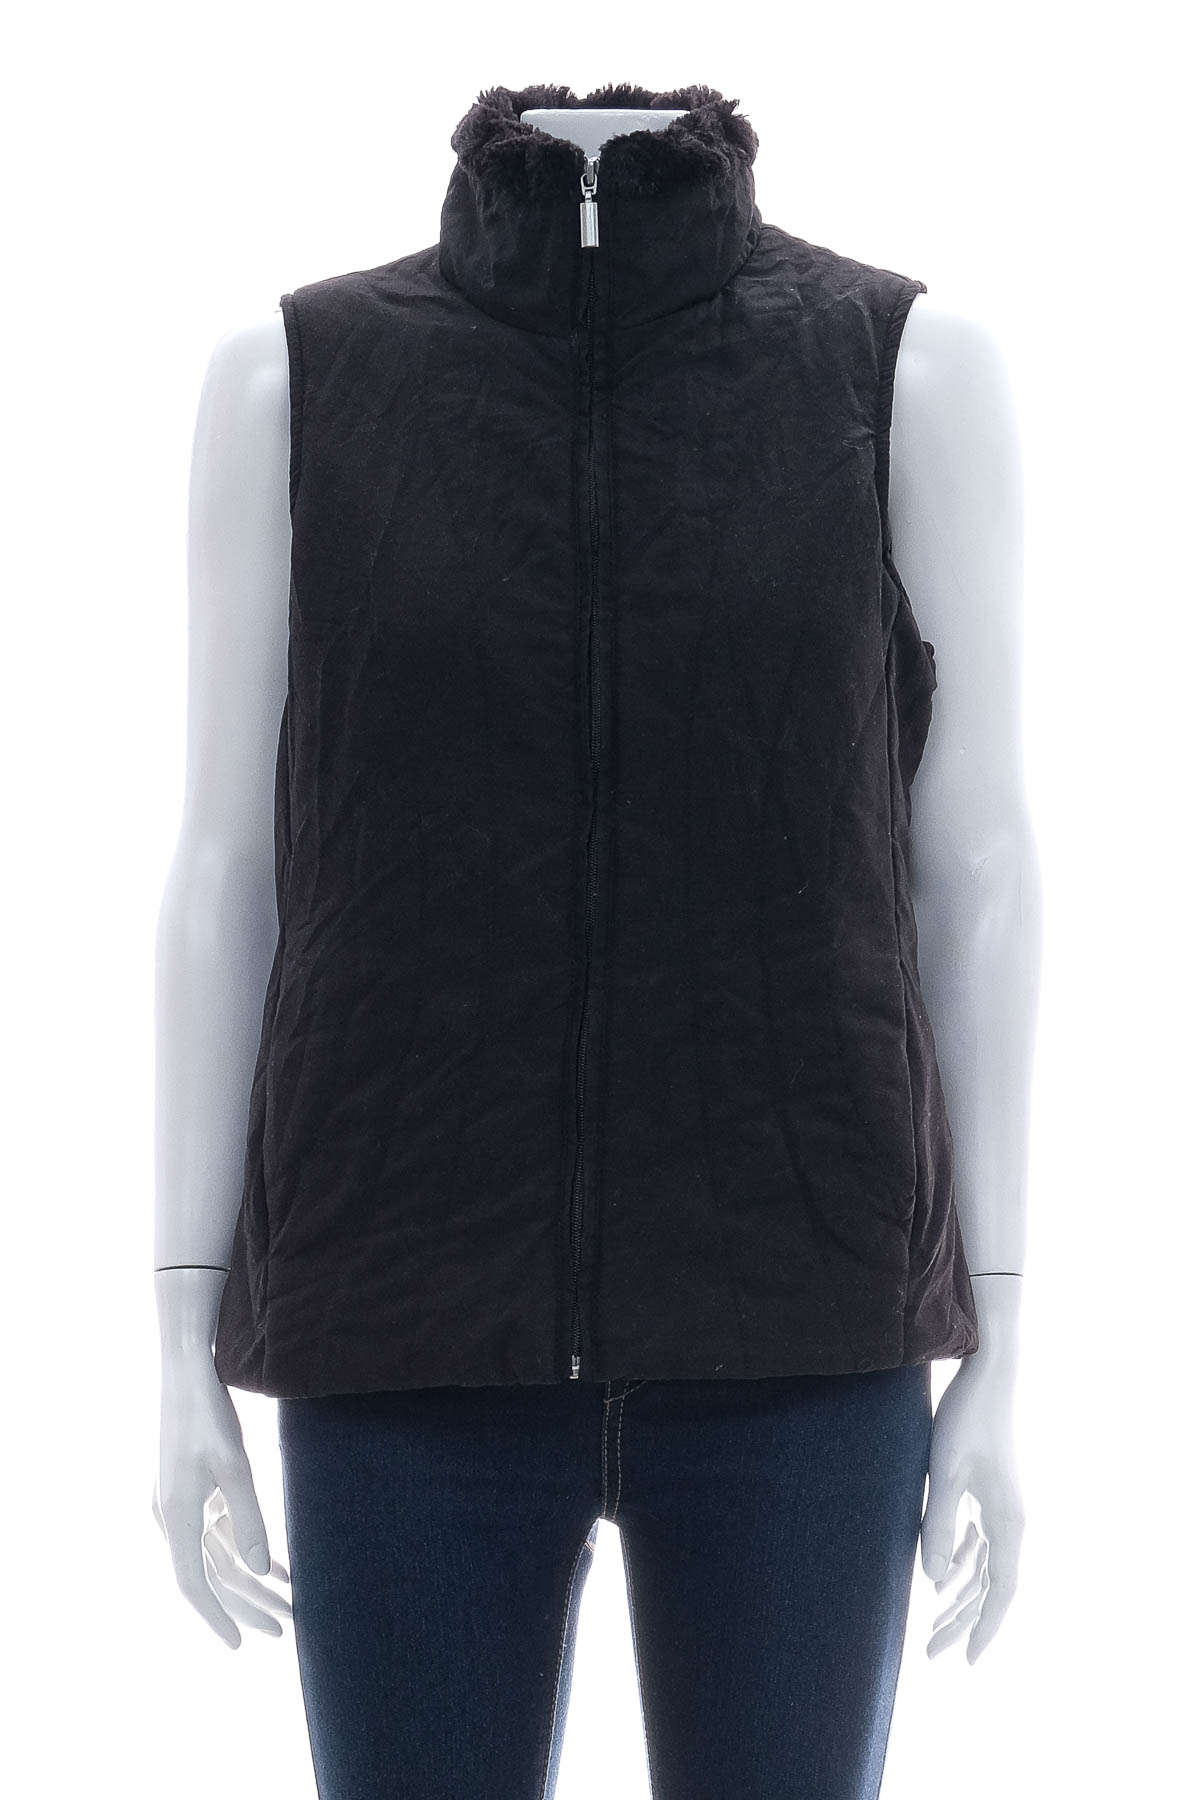 Women's vest - JANE ASHLEY - 0